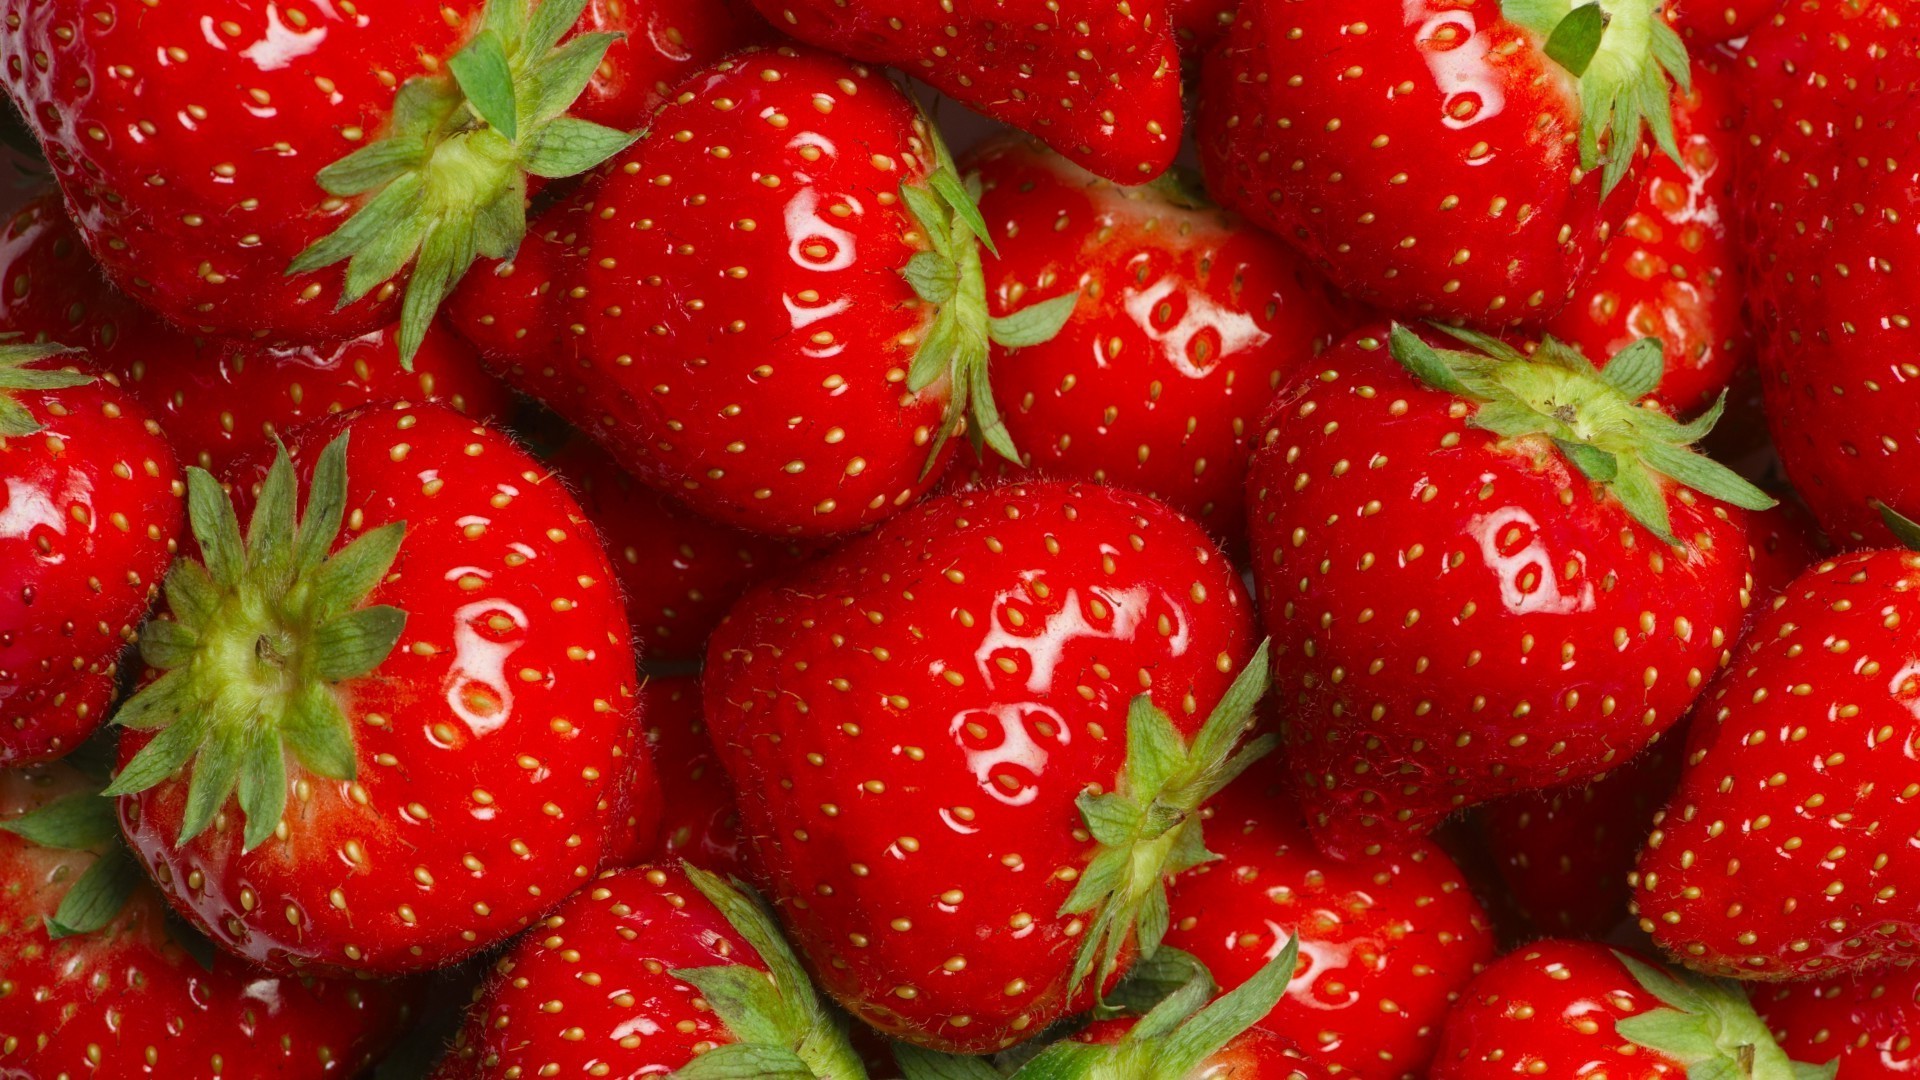 ягоды клубничный сочные фрукты вкусные здоровья еда ягодка питание здоровый сладкий кондитерское изделие лист вкусные лето свежесть природа пастбище витамин диета